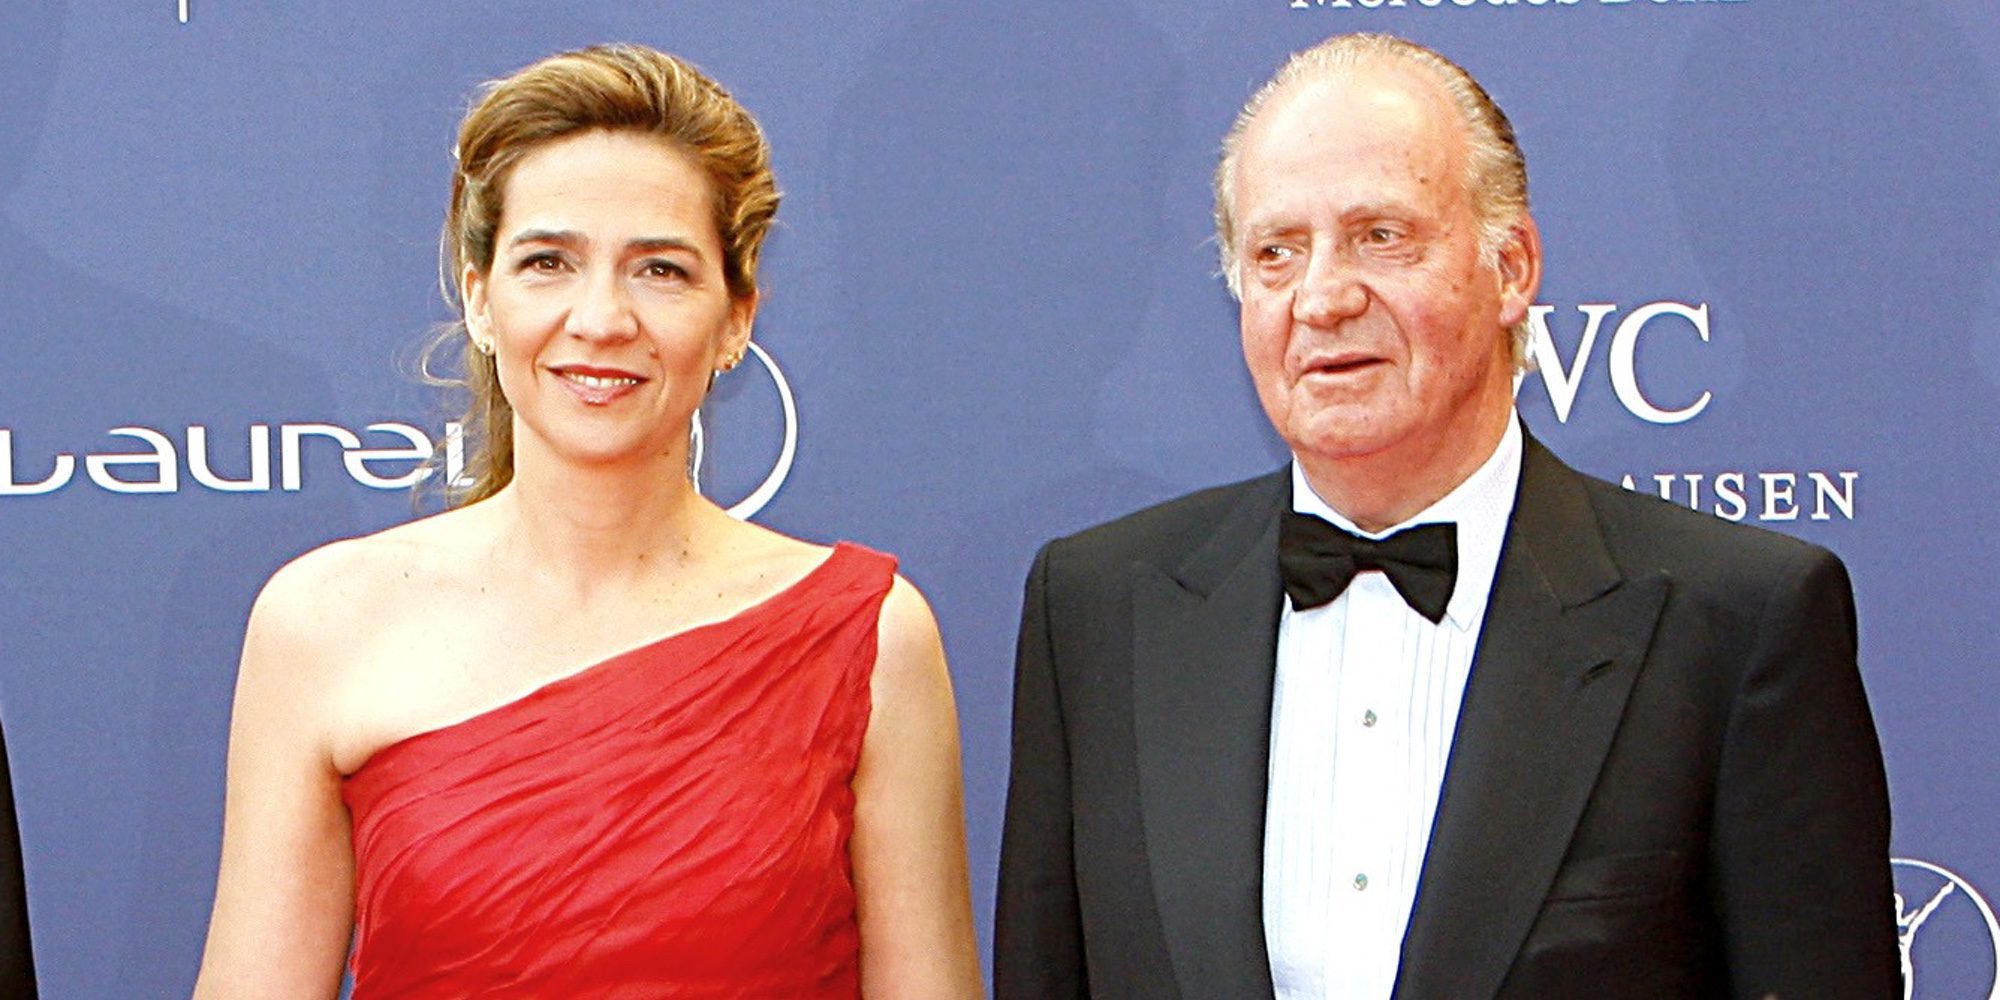 Manos Limpias dice que el Rey Juan Carlos les ofreció 2 millones para salvar a la Infanta Cristina del juicio